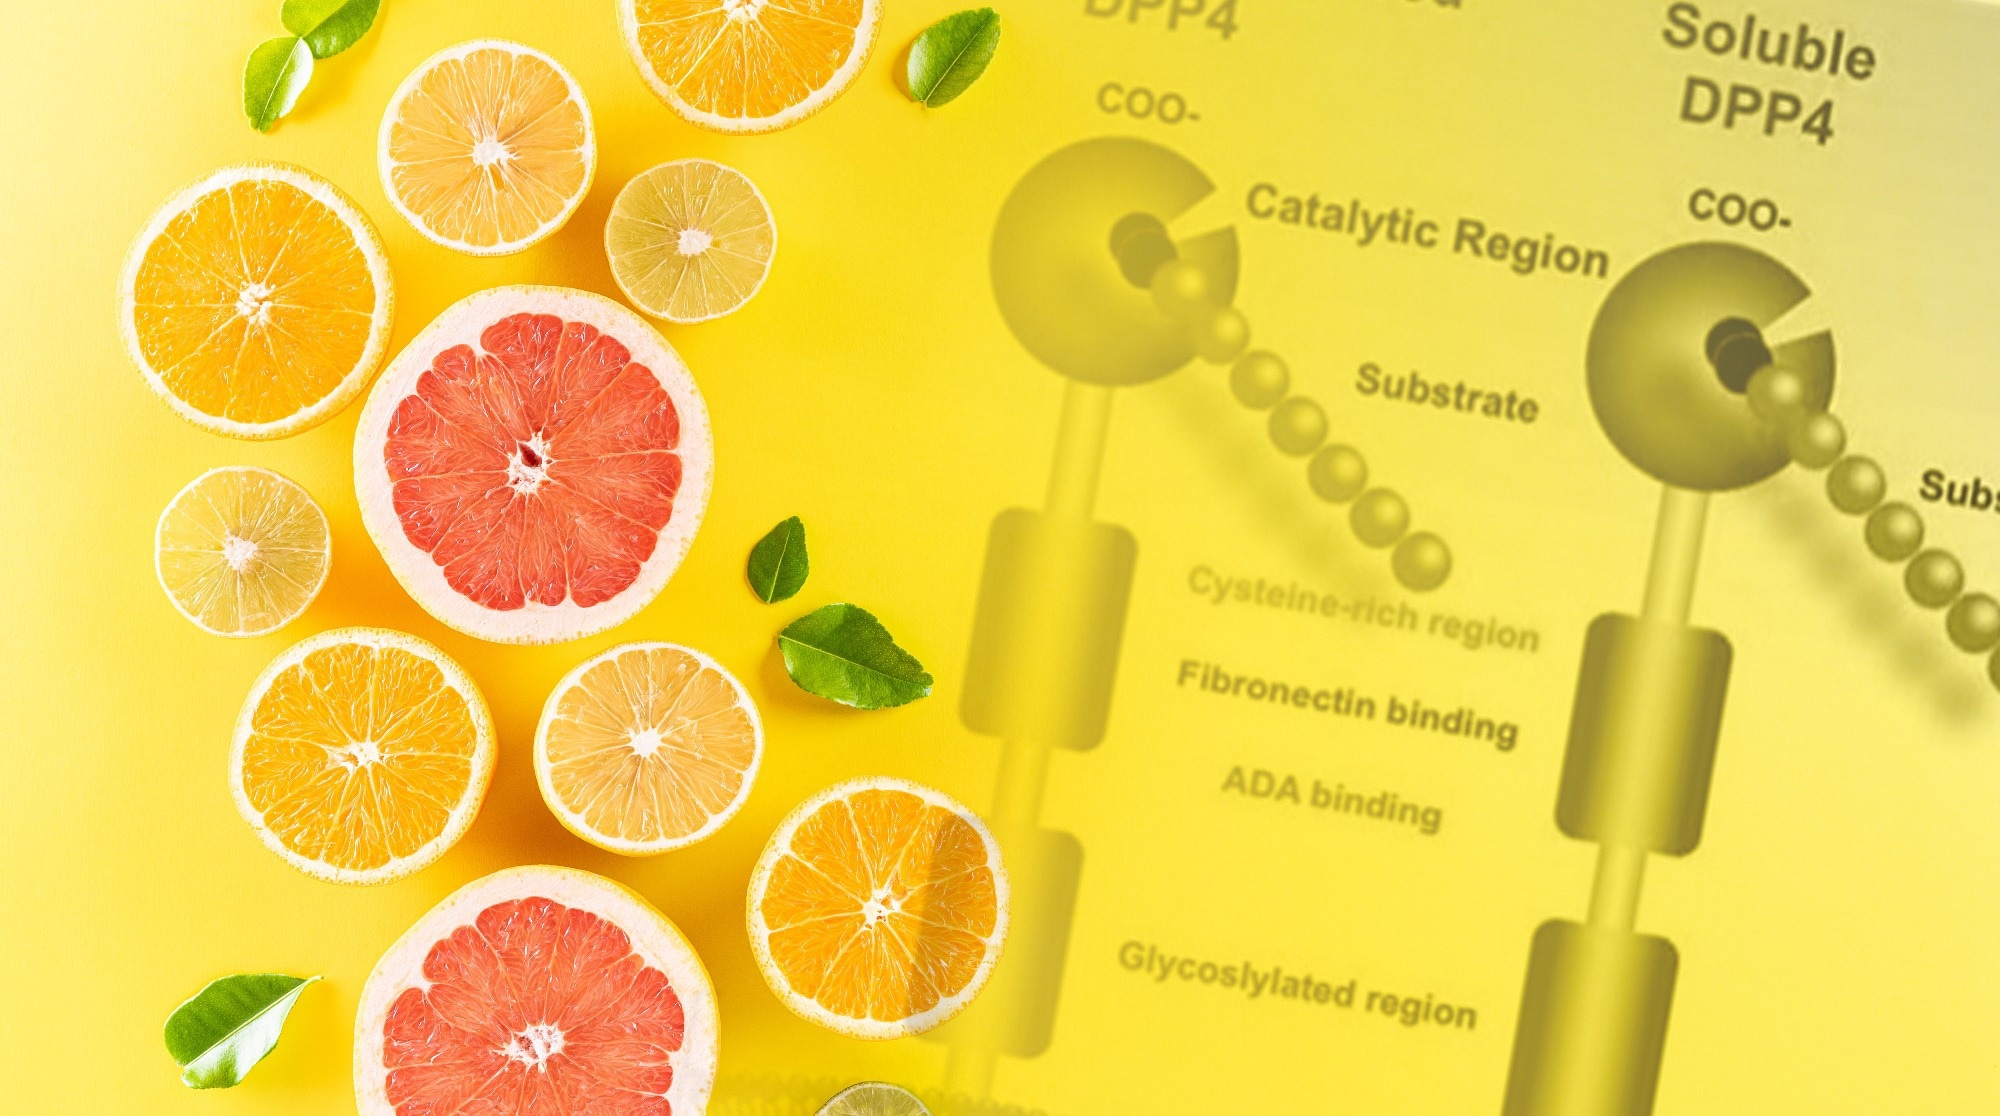 Citrus compounds show zesty promise in type 2 diabetes management